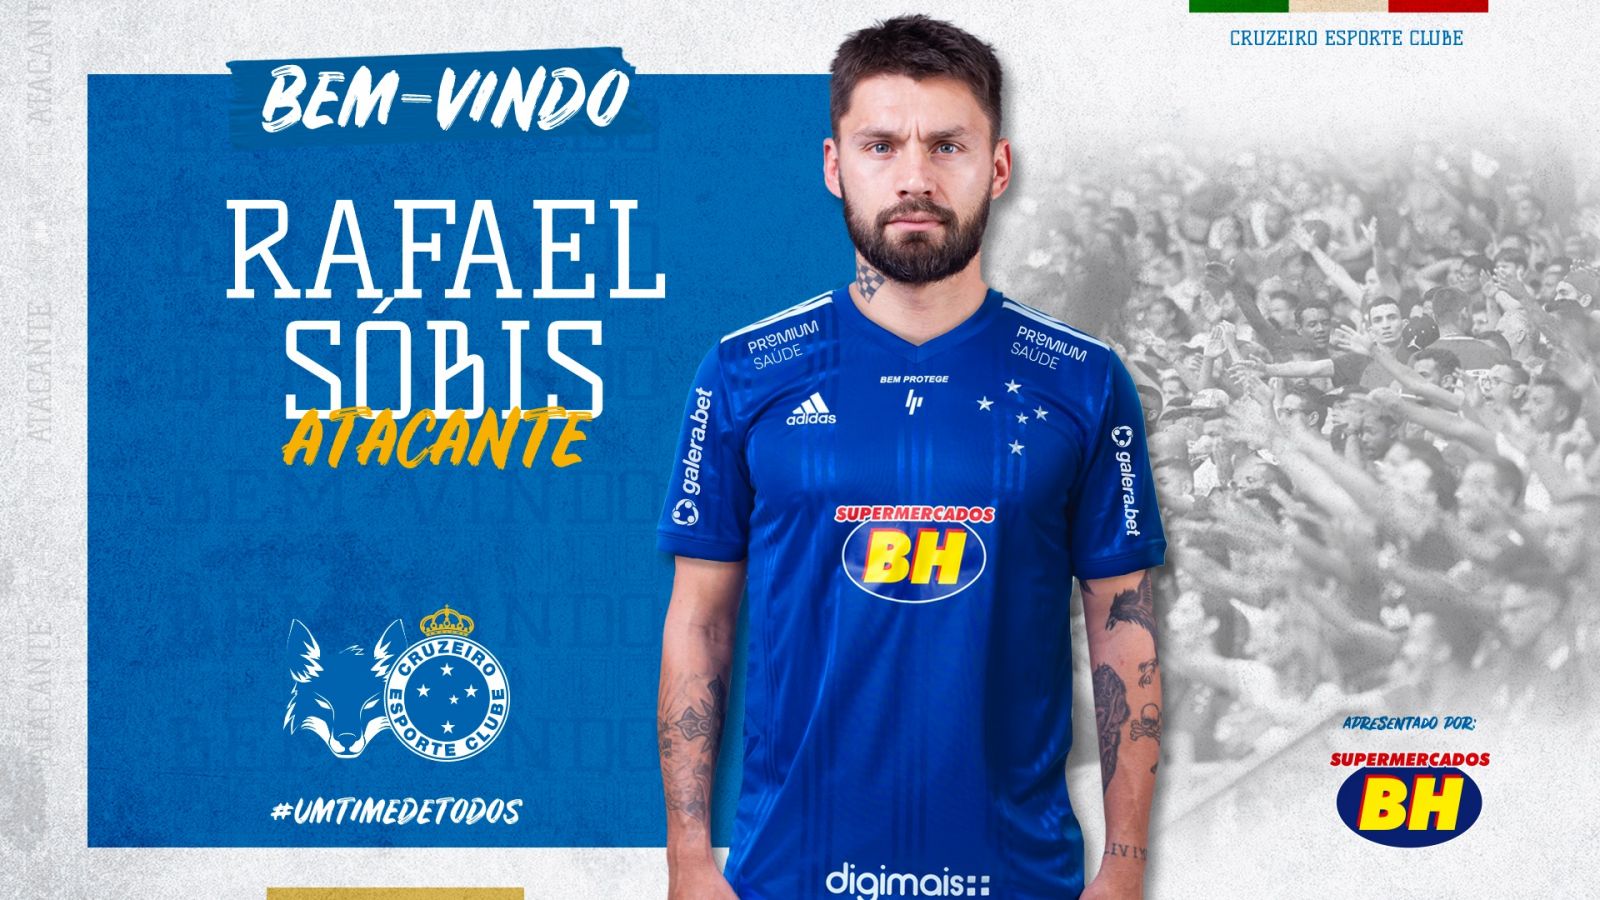 Campeão com a camisa celeste, Rafael Sóbis está de volta e assina com o Cruzeiro até dezembro de 2021